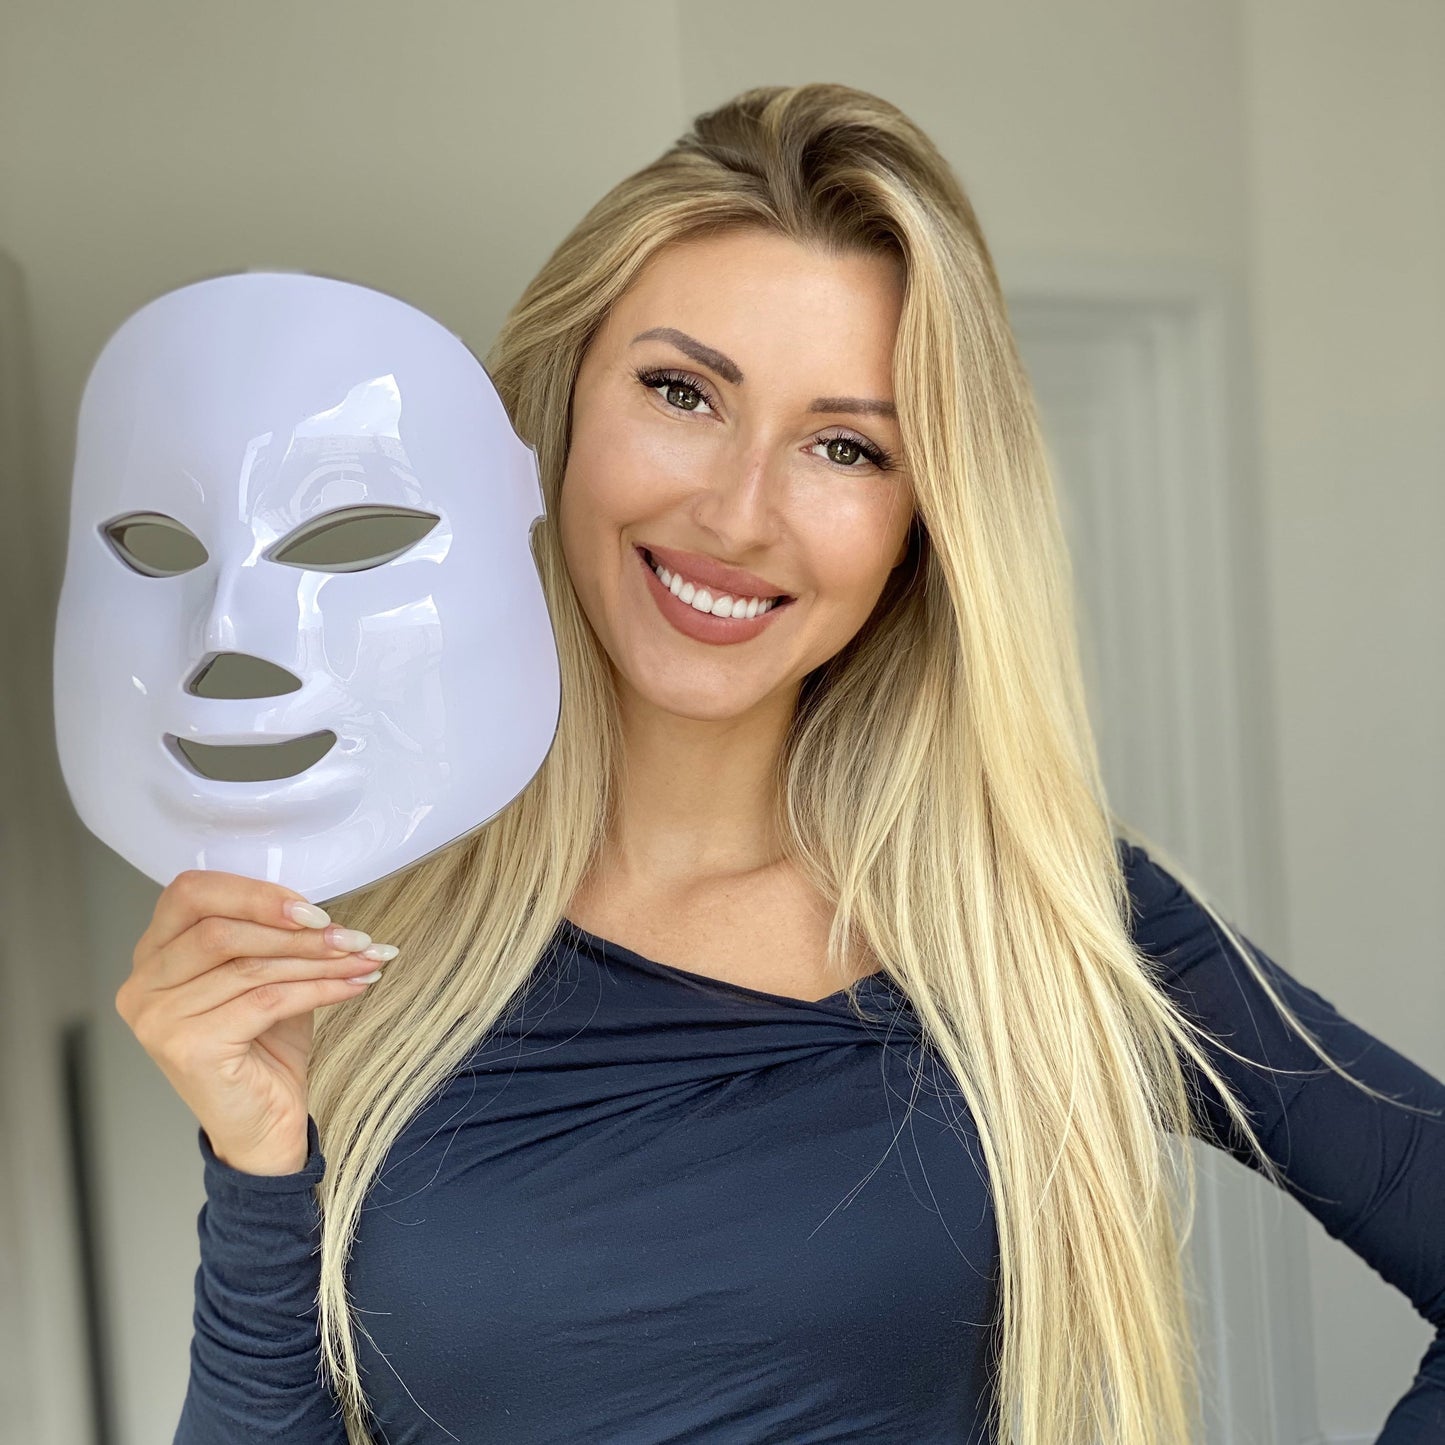 Genève LED Mask - Light Therapy